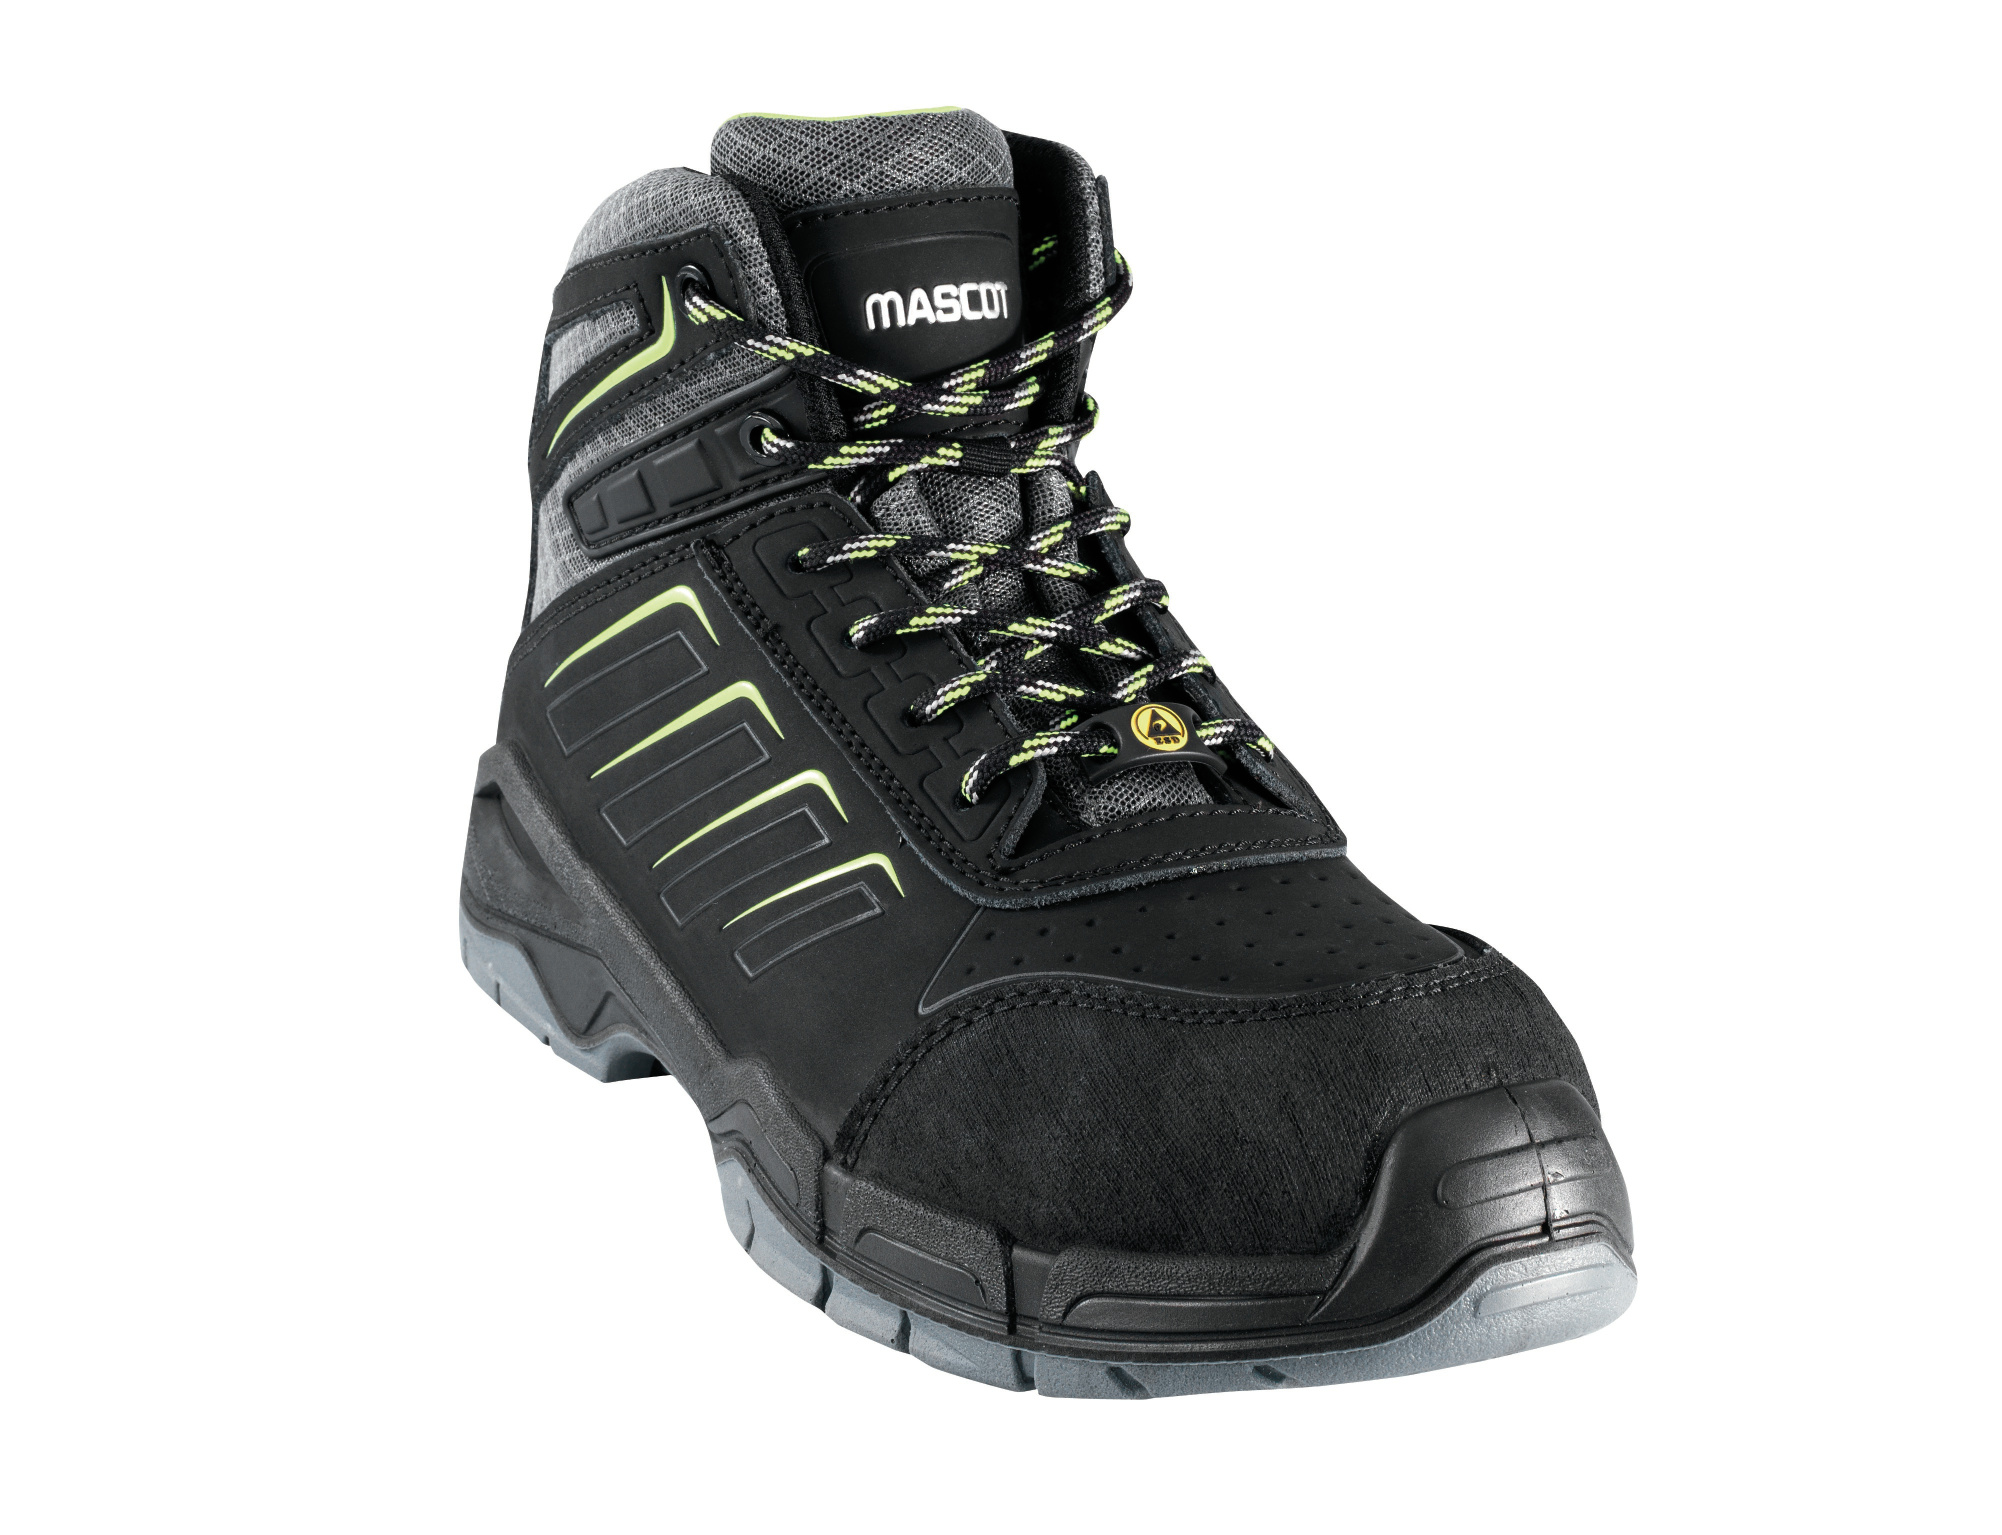 MASCOT Footwear Fit Sicherheitsstiefel "Bimberi Peak" Nr. F0109-937-09